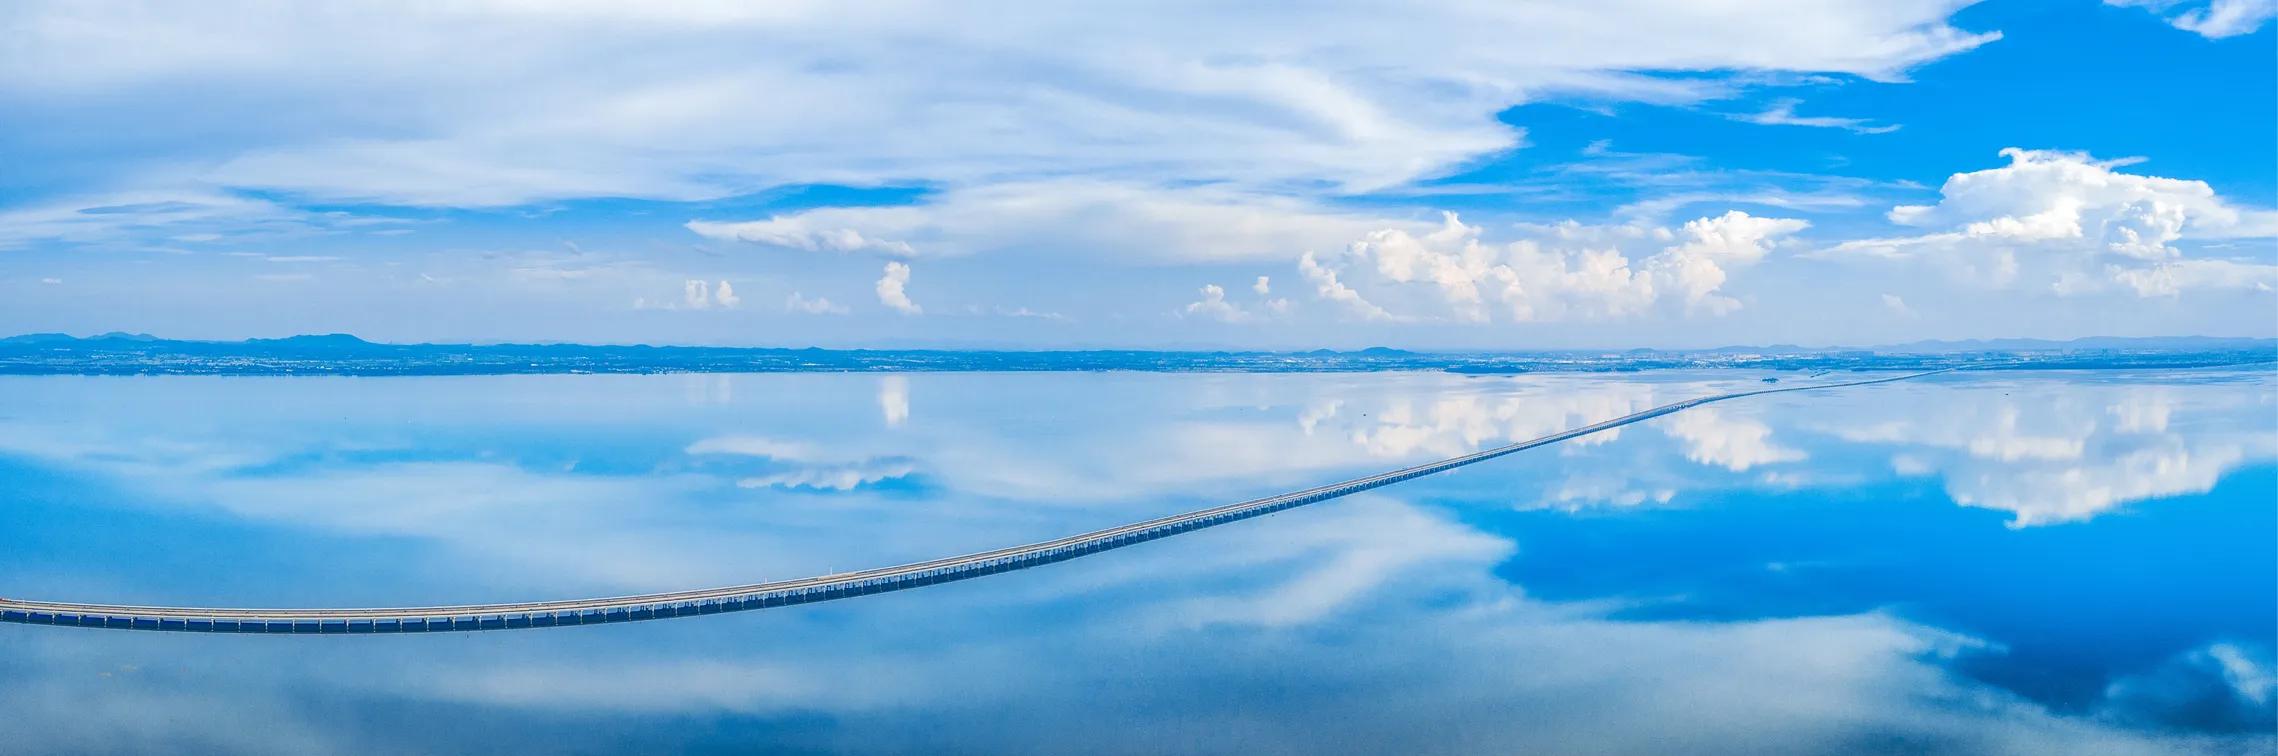 天空之镜石臼湖图片